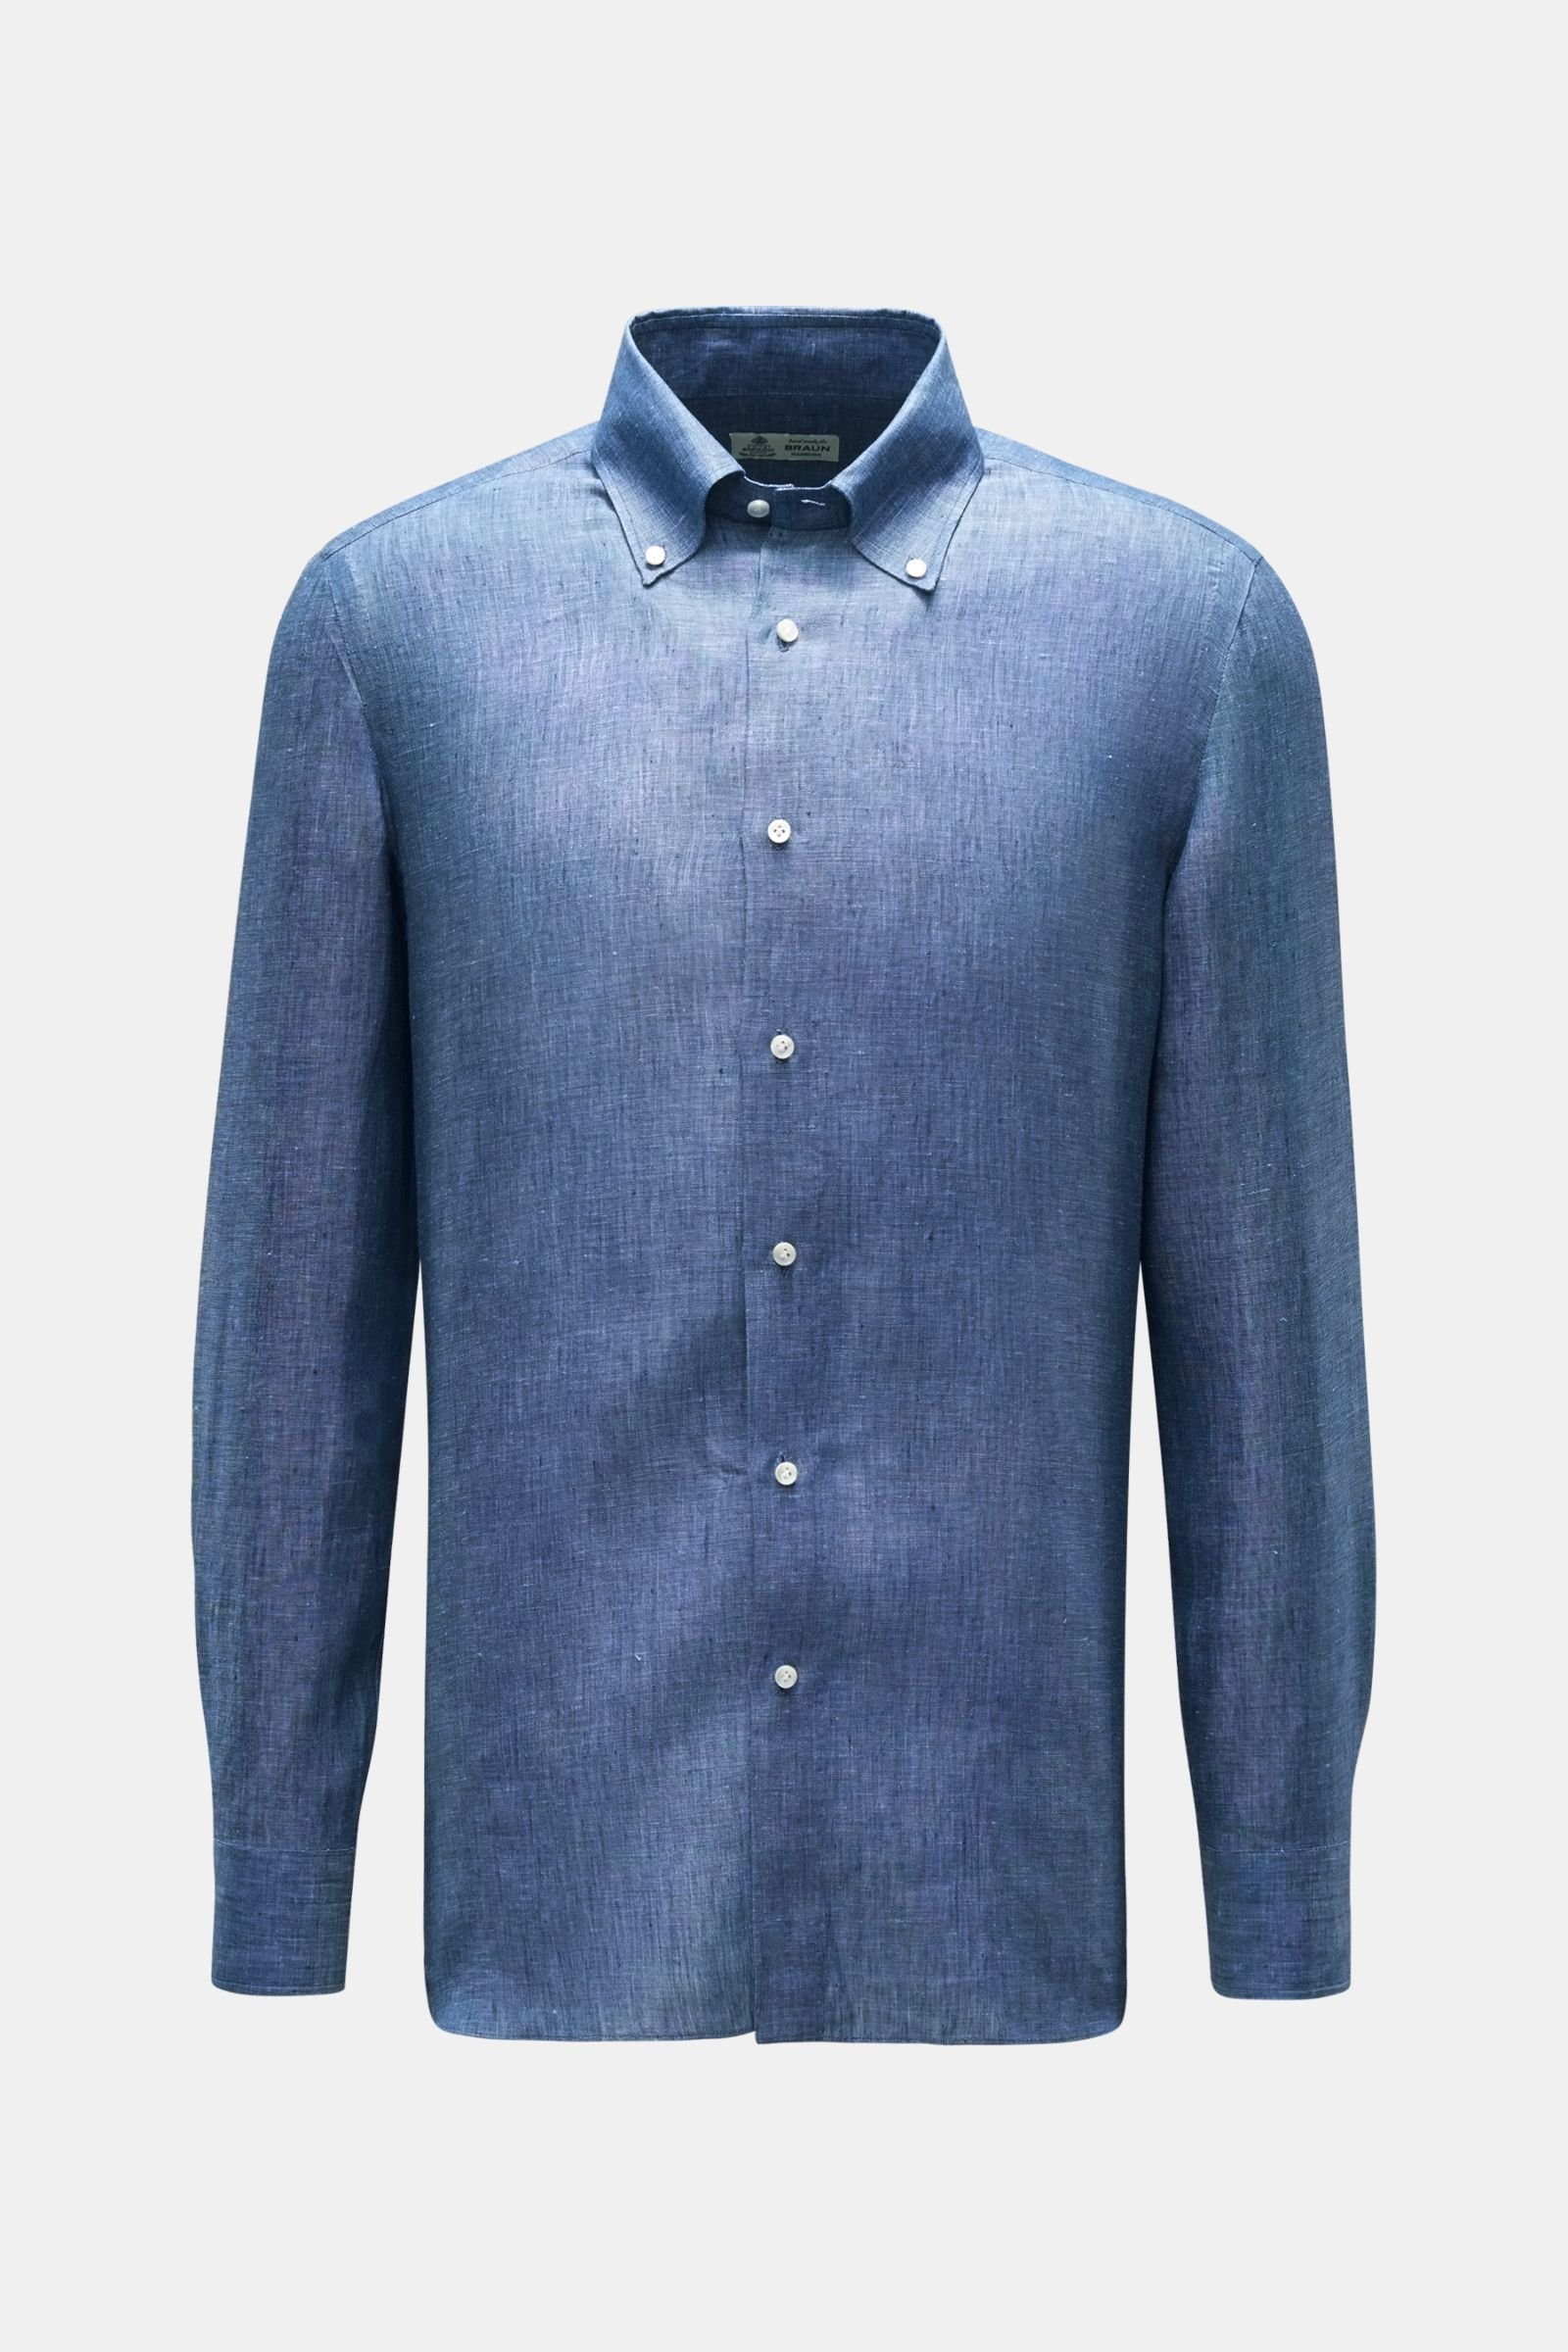 Leinenhemd 'Gable' Button-Down-Kragen graublau